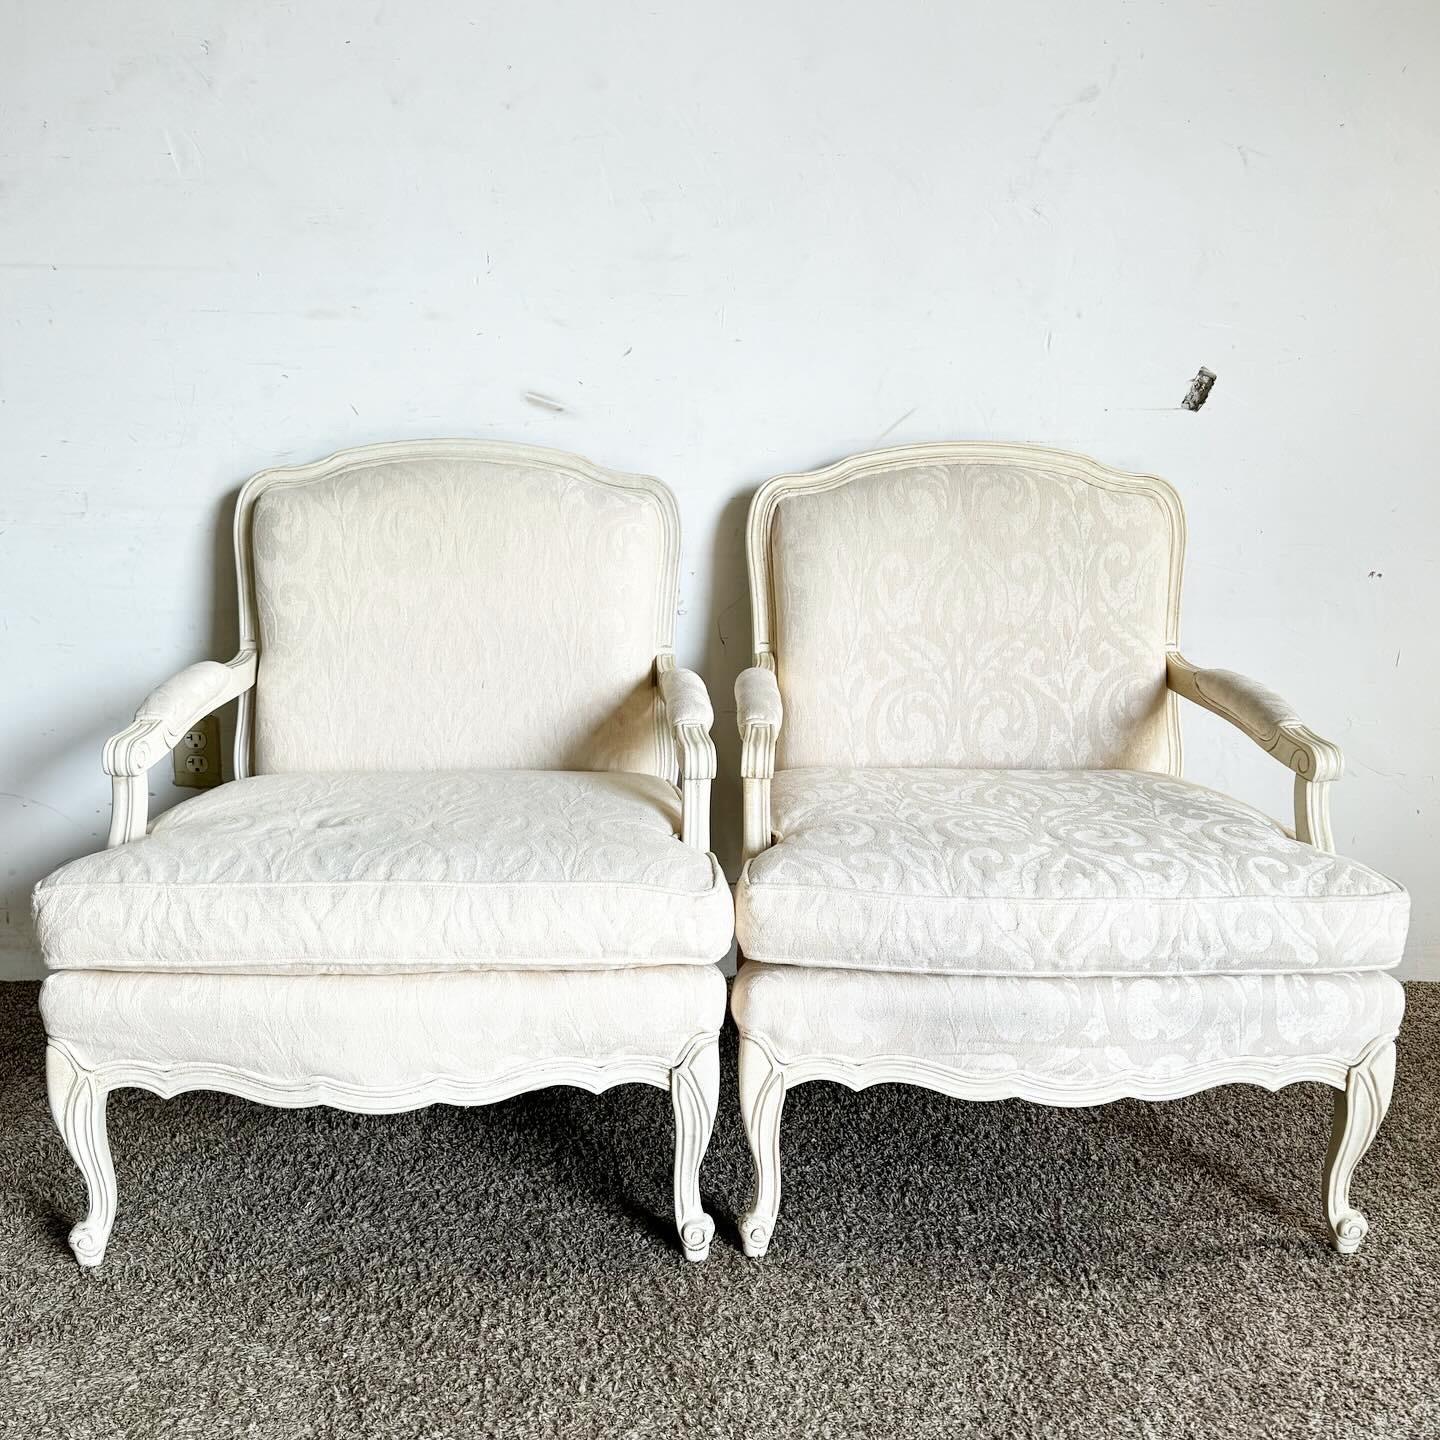 Ajoutez une touche d'élégance classique à votre espace avec ces chaises à accoudoirs de style provincial français crème/blanc cassé. Avec leurs détails complexes et leur silhouette gracieuse, ces chaises sont revêtues d'un tissu doux crème/blanc